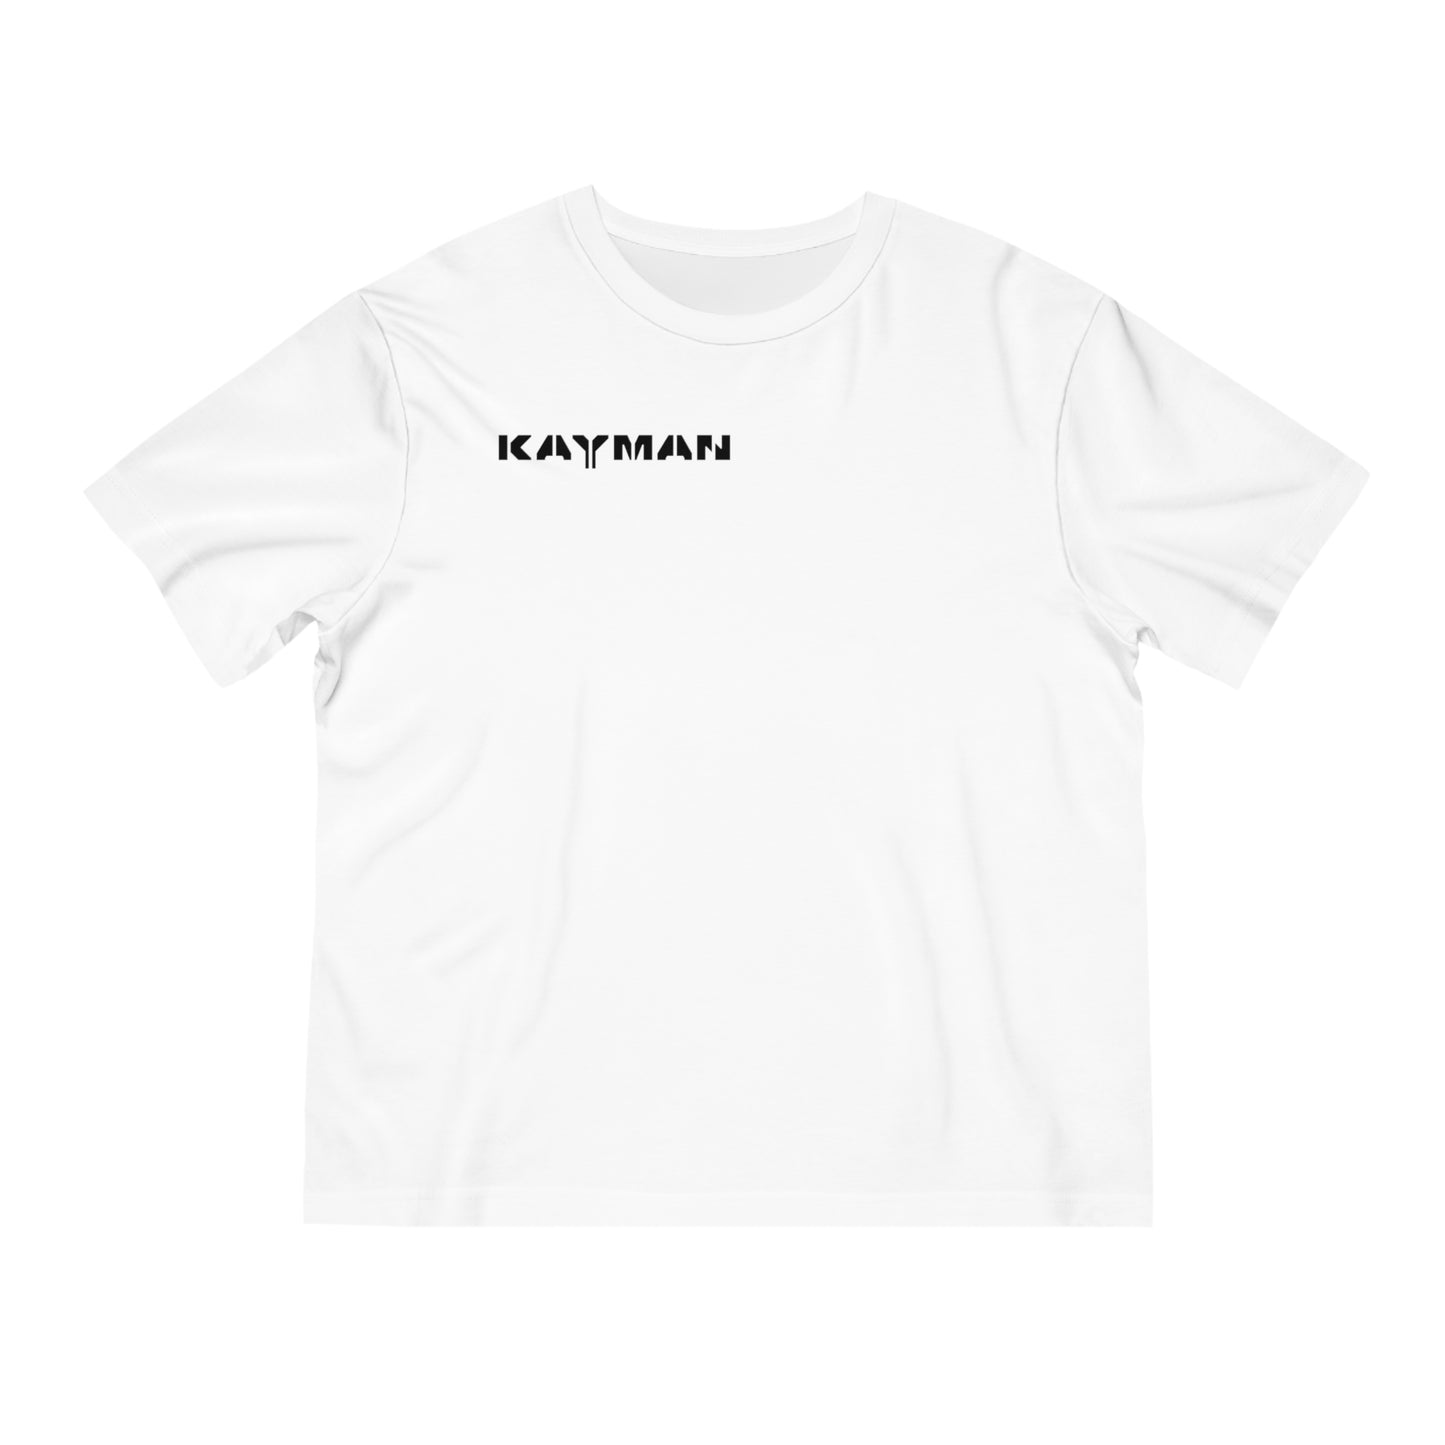 KAYMAN Logo Shirt